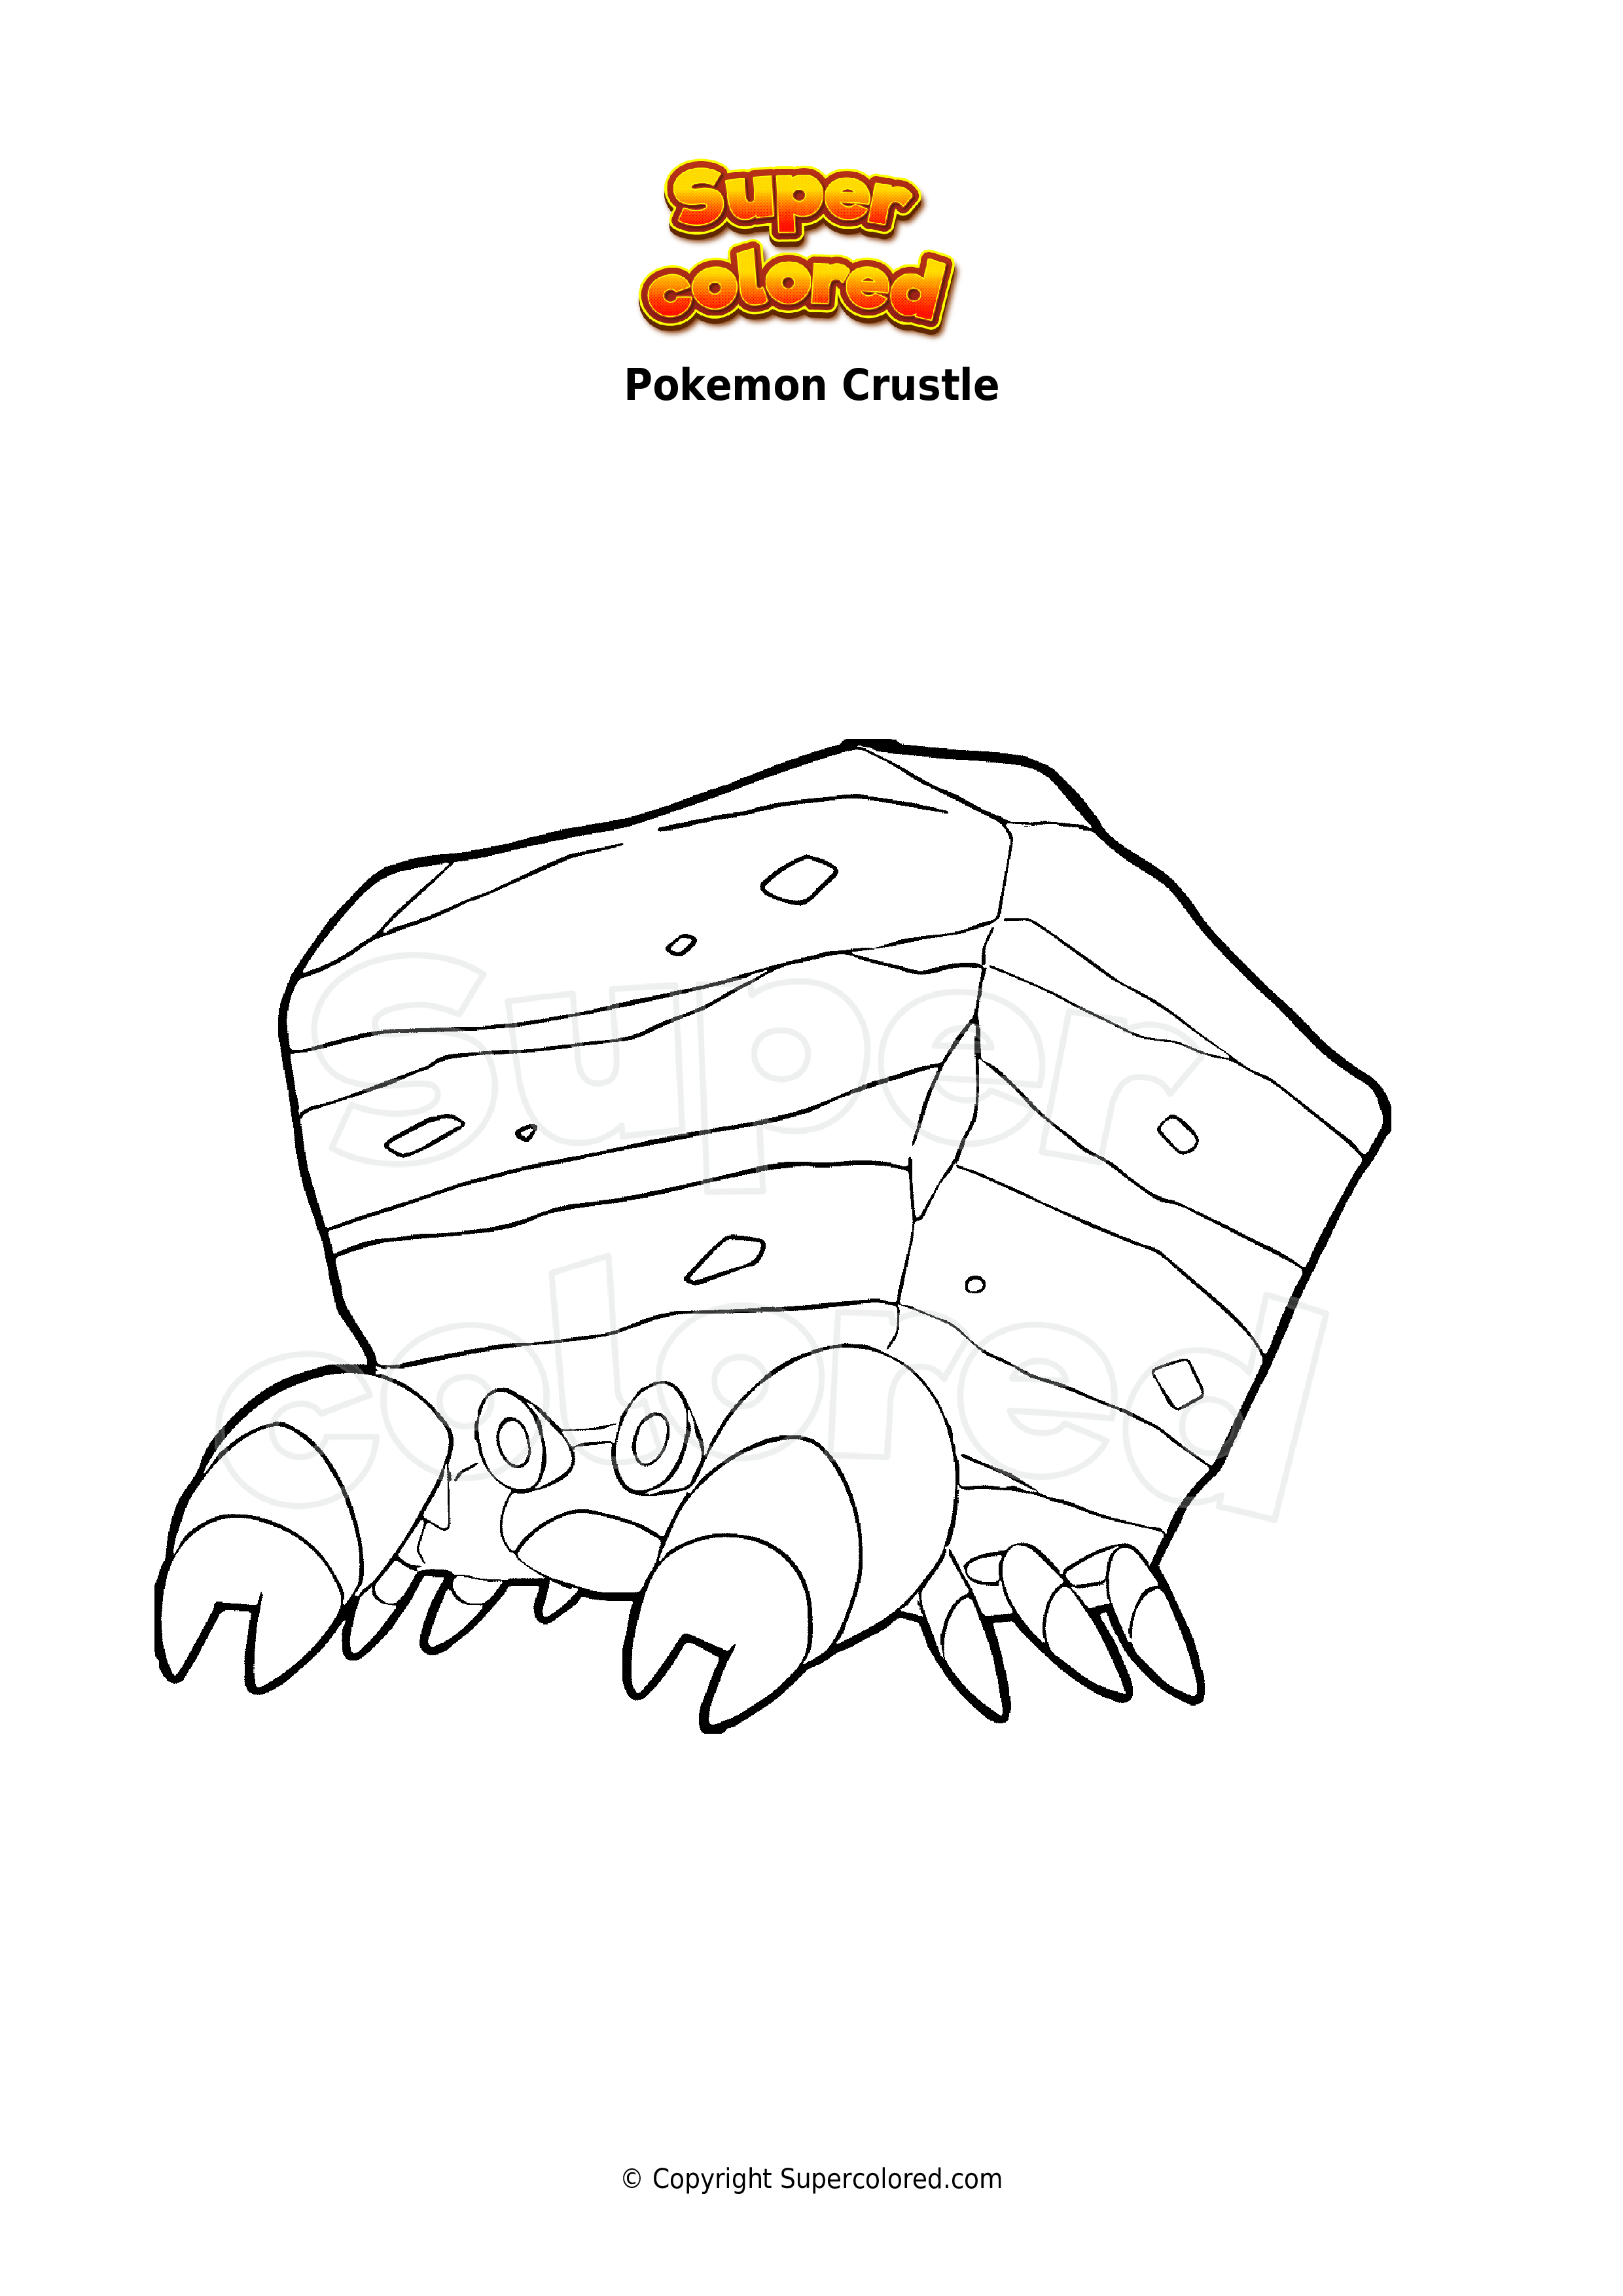 Coloring page Pokemon Crustle - Supercolored.com